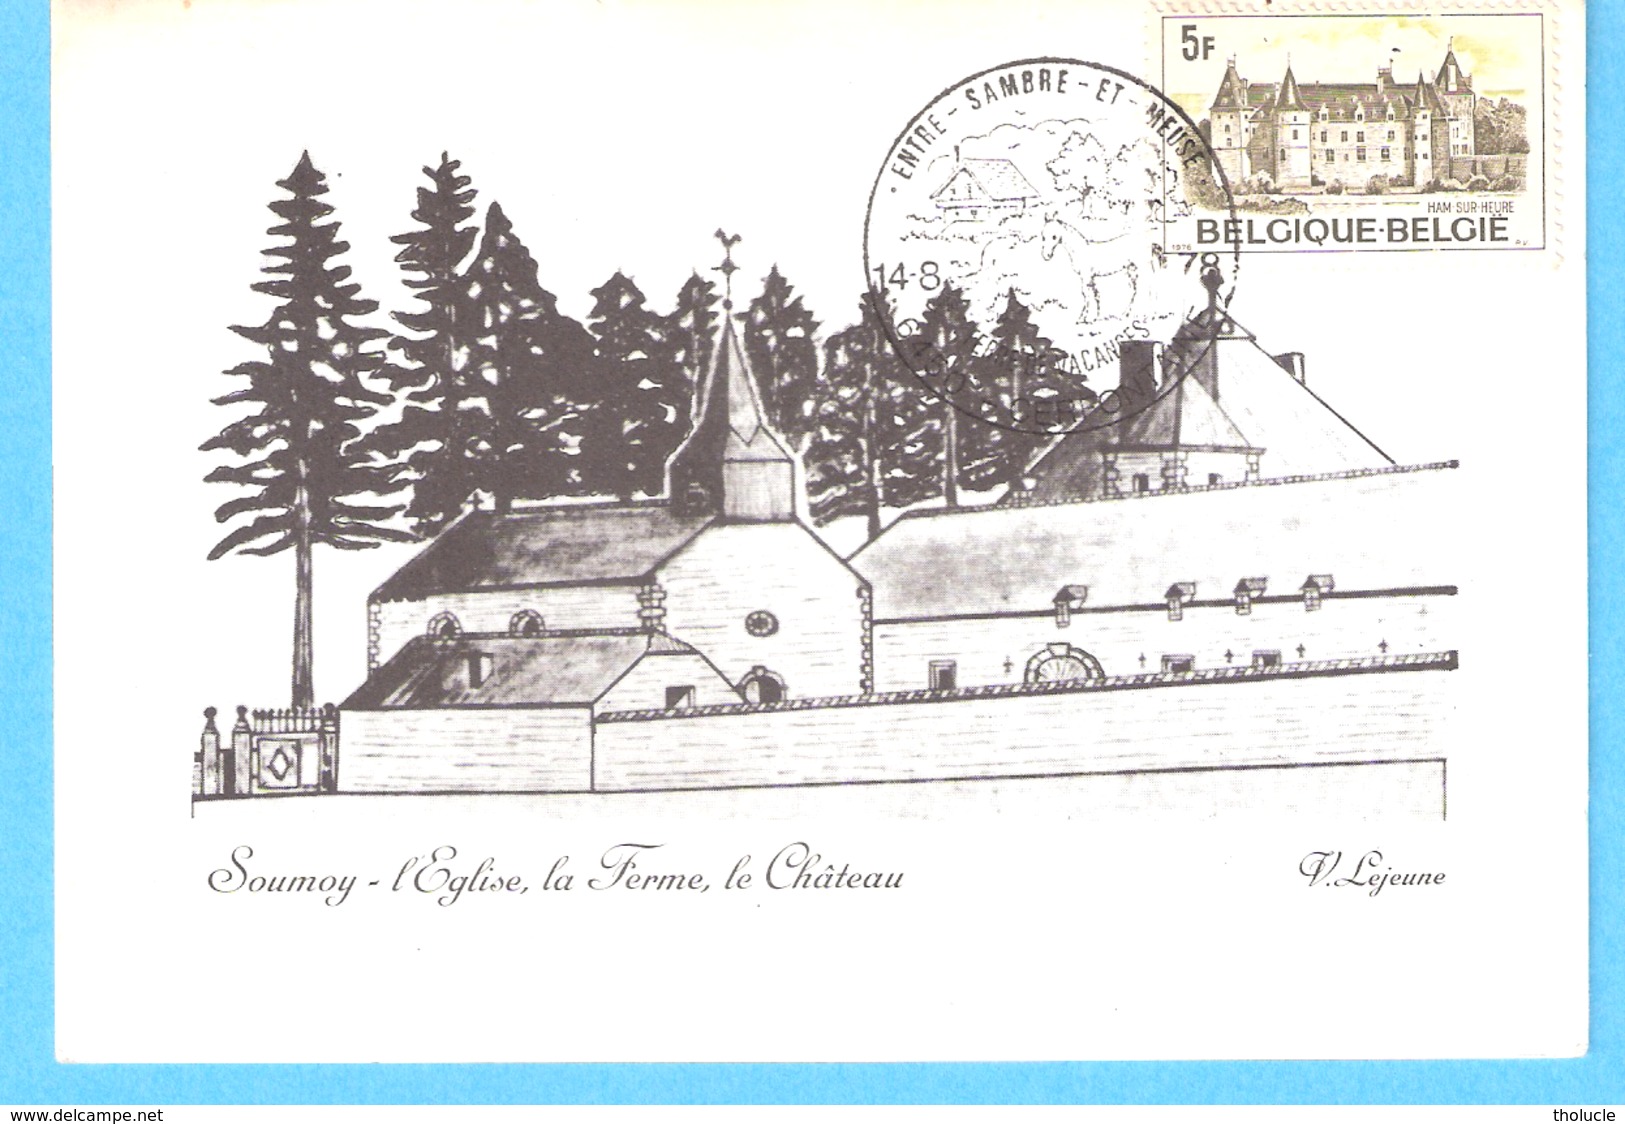 Soumoy-Cerfontaine-L'Eglise, La Ferme , Le Château-Dessin De V.Lejeune-cachet De Complaisance-1978-Timbre Ham-sur-Heure - Cerfontaine